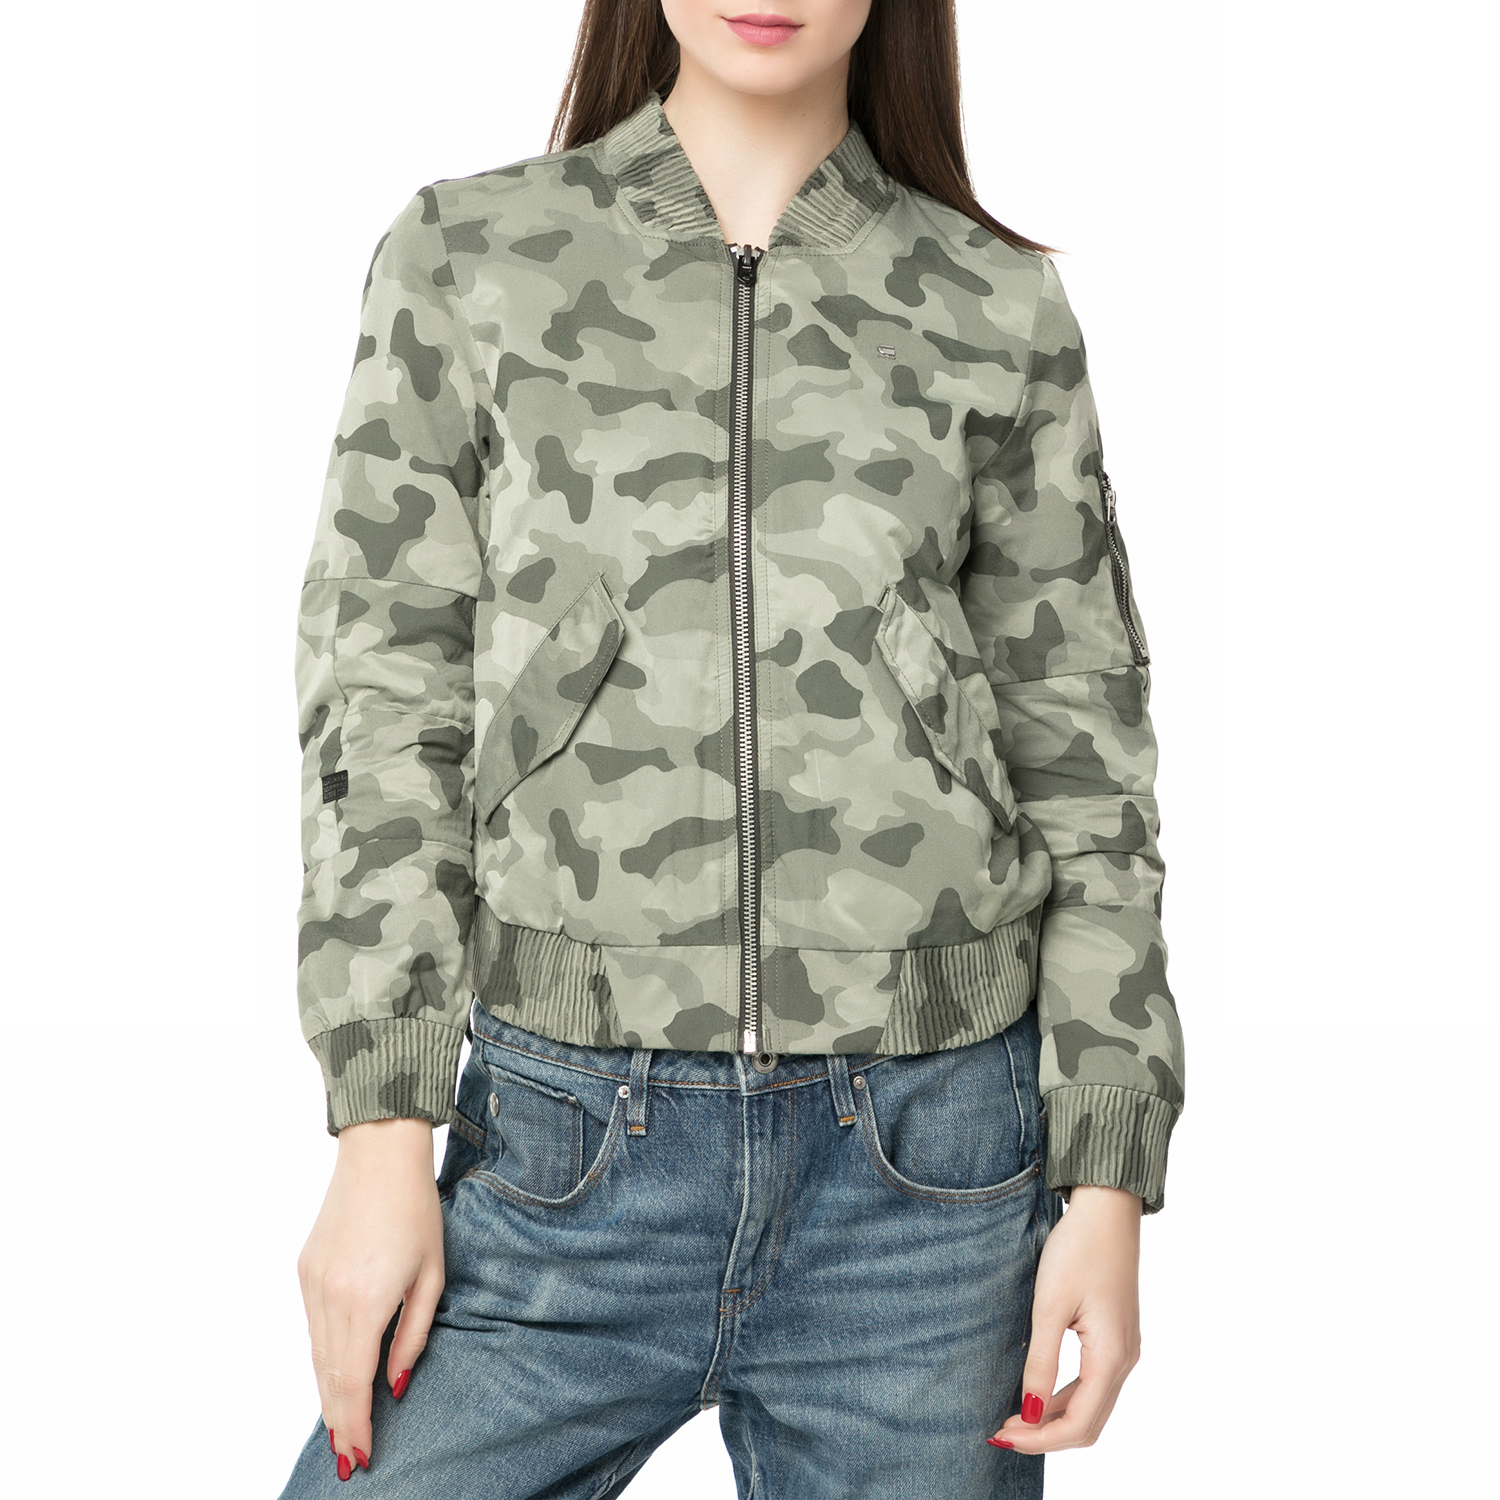 Γυναικεία/Ρούχα/Πανωφόρια/Τζάκετς G-STAR RAW - Γυναικείο jacket Rackam slim bomber παραλλαγής